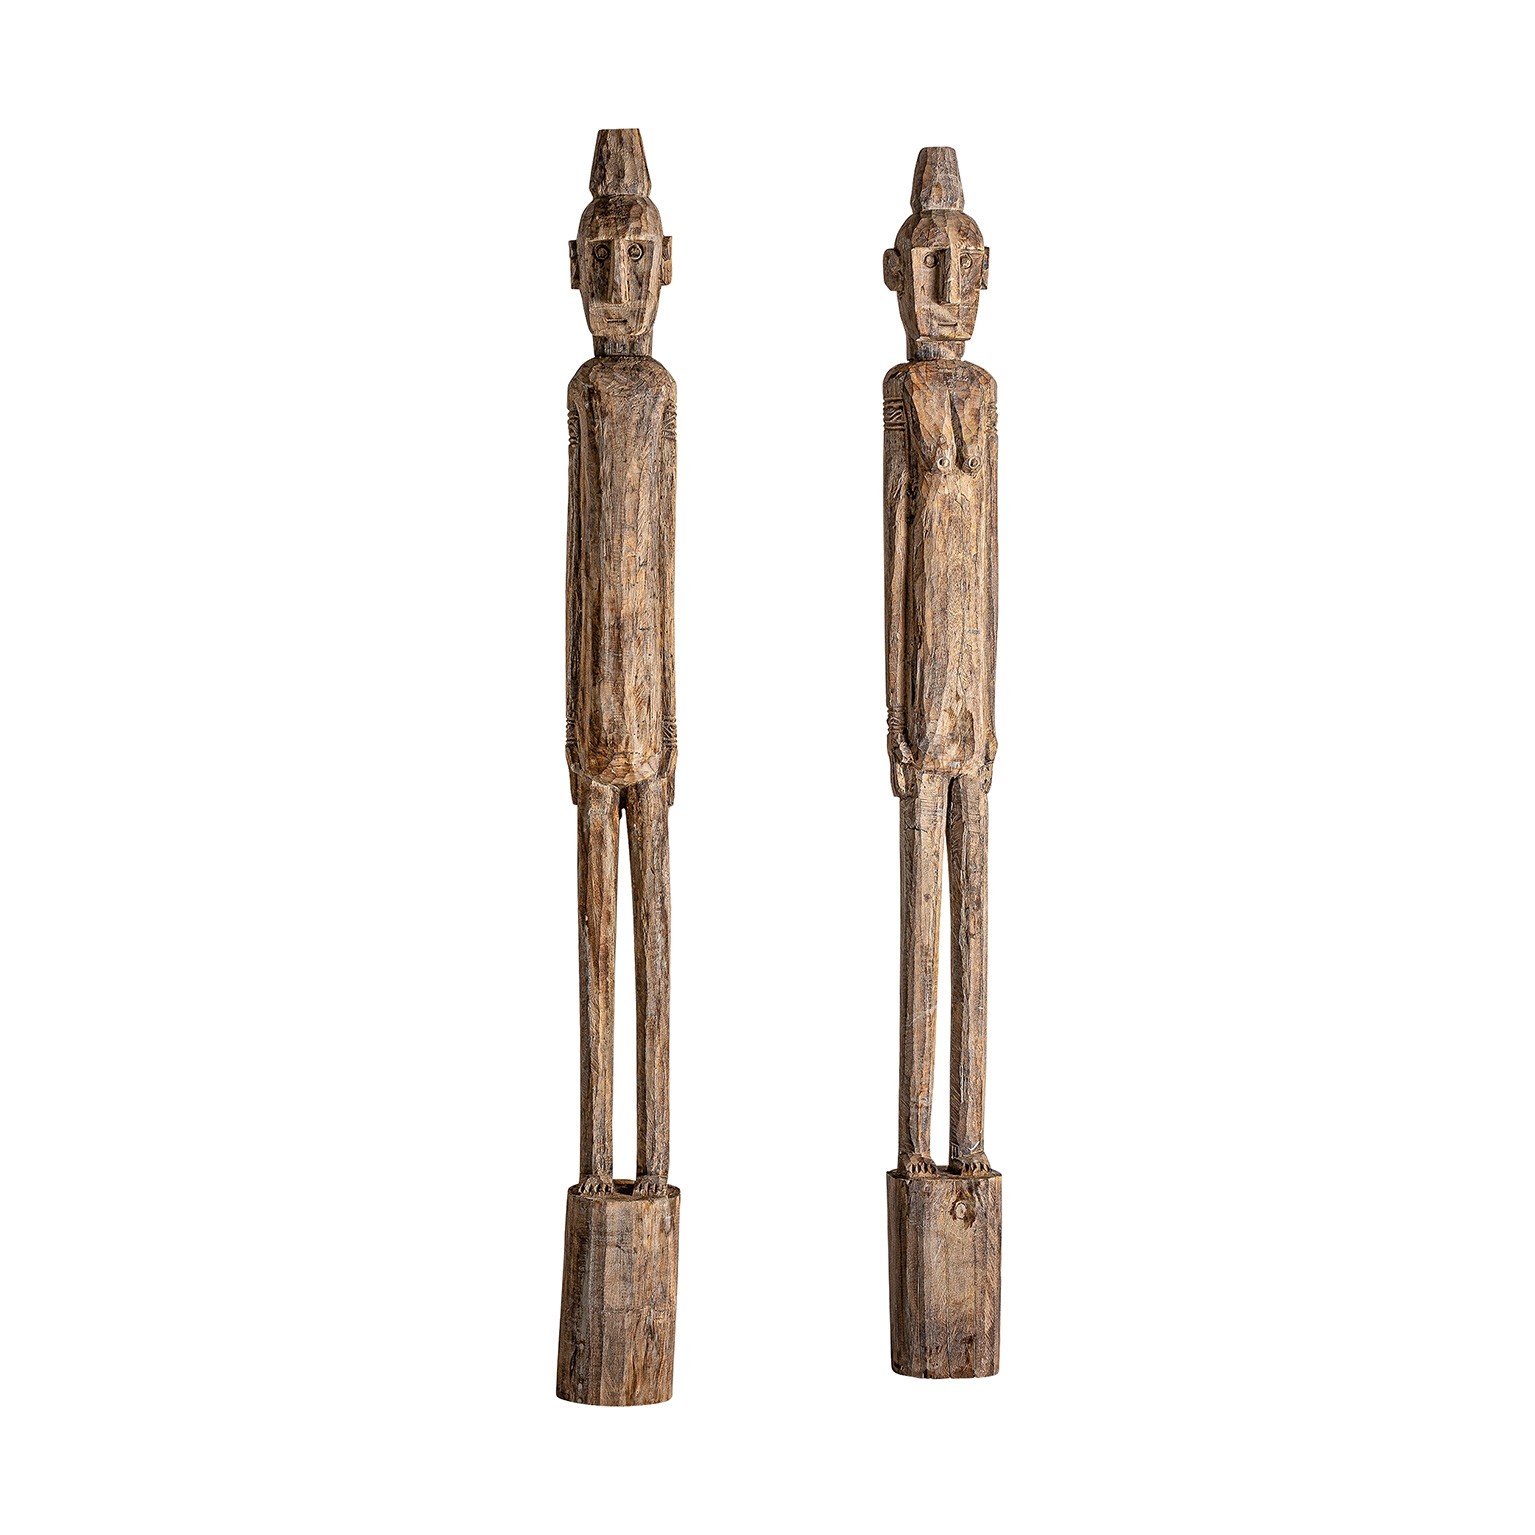 Estila Designový set vysokých figur Ipkins v etno stylu z masivního dřeva v naturálním hnědém provedení 215cm